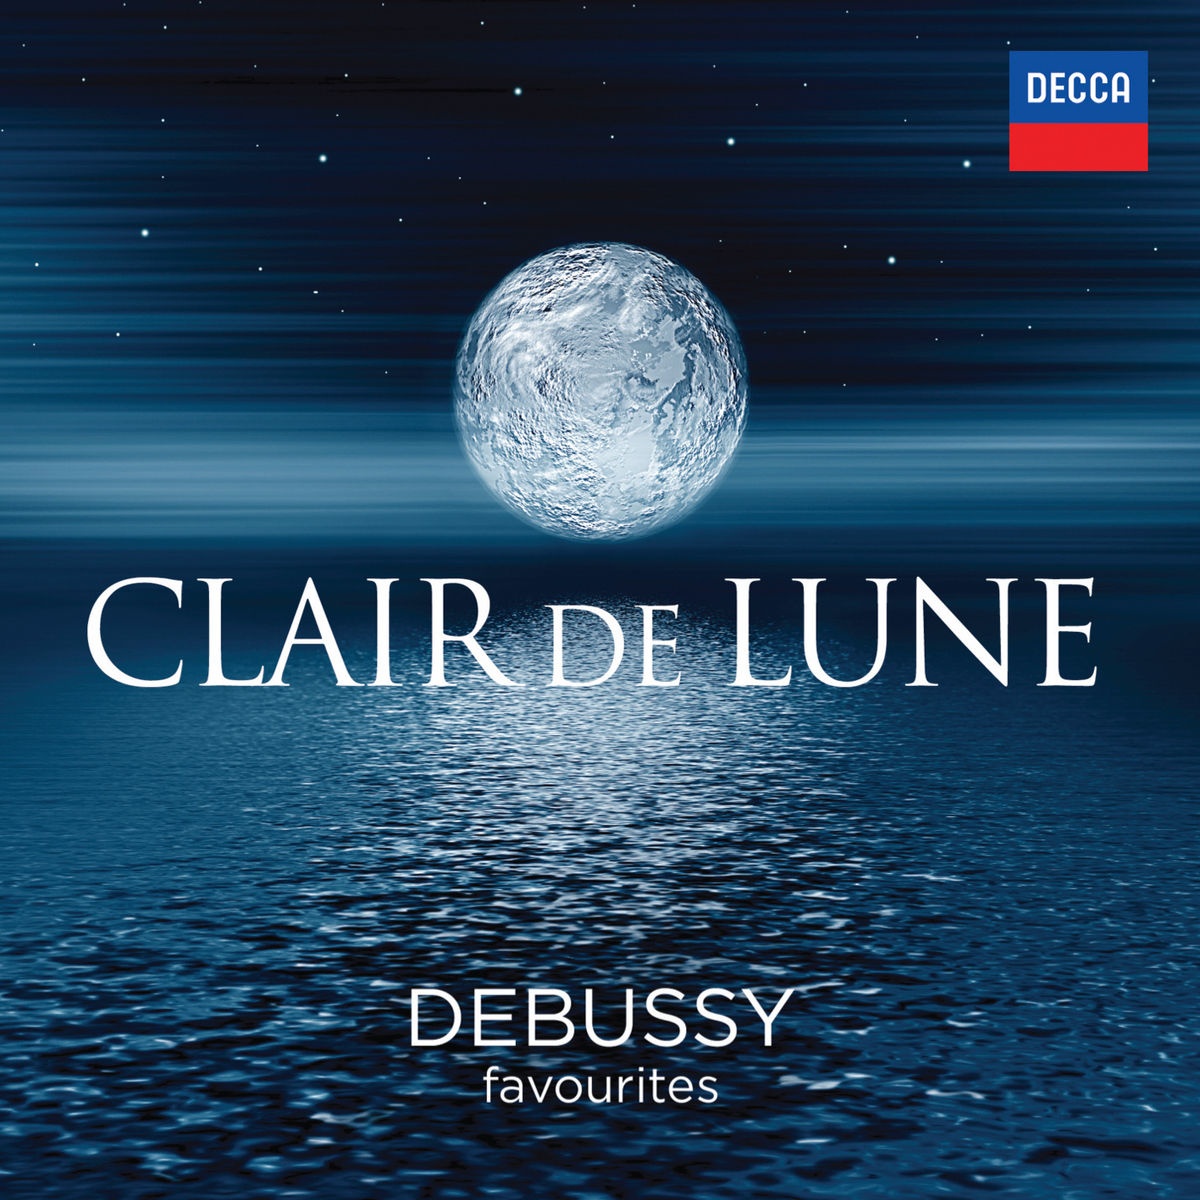 Debussy: Préludes - Book 2 - 7. La terrasse des audiences du clair de lune